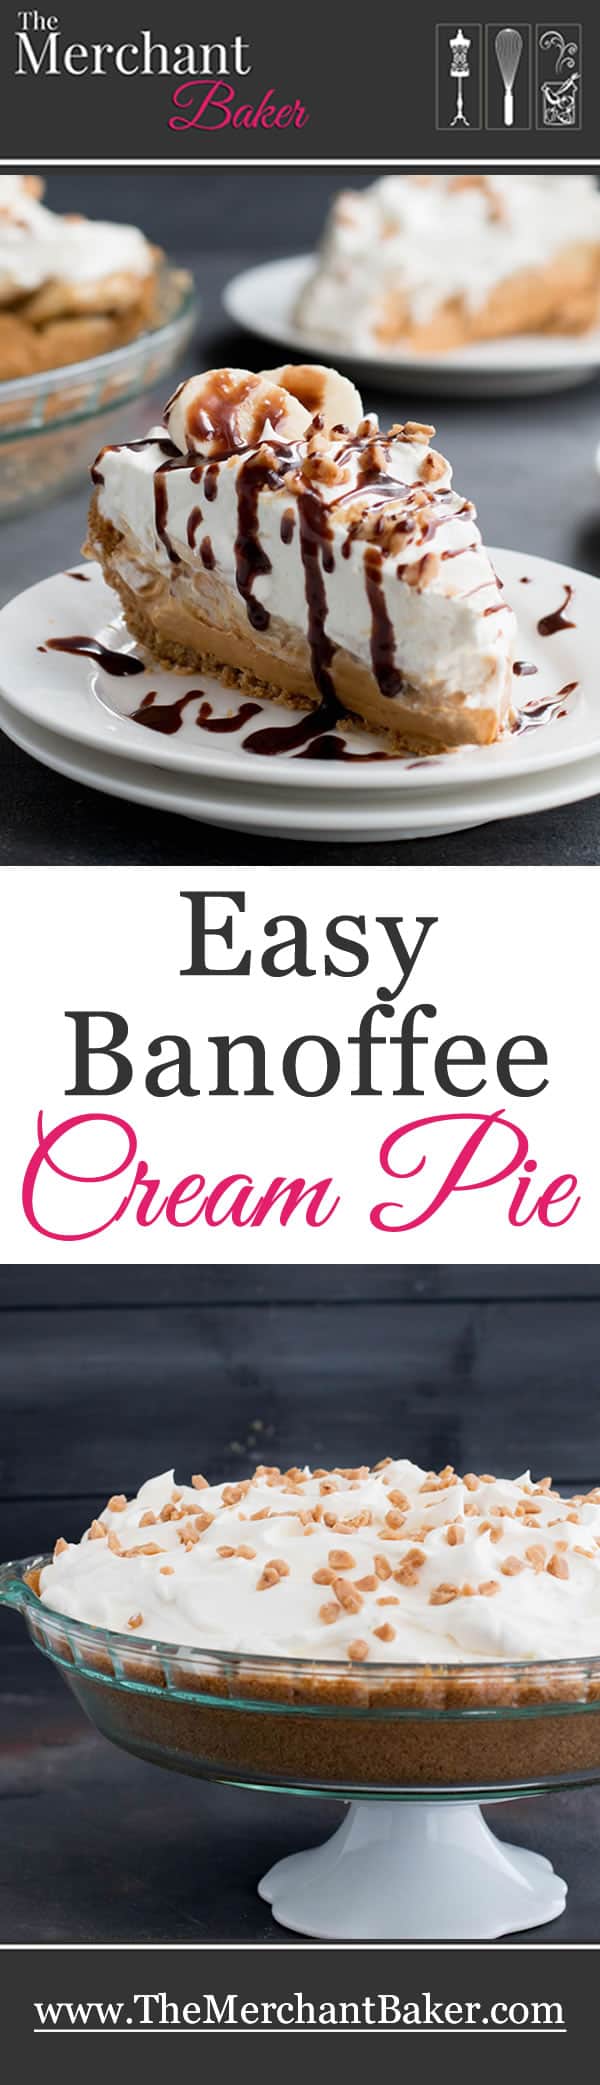 Easy Banoffee Cream Pie